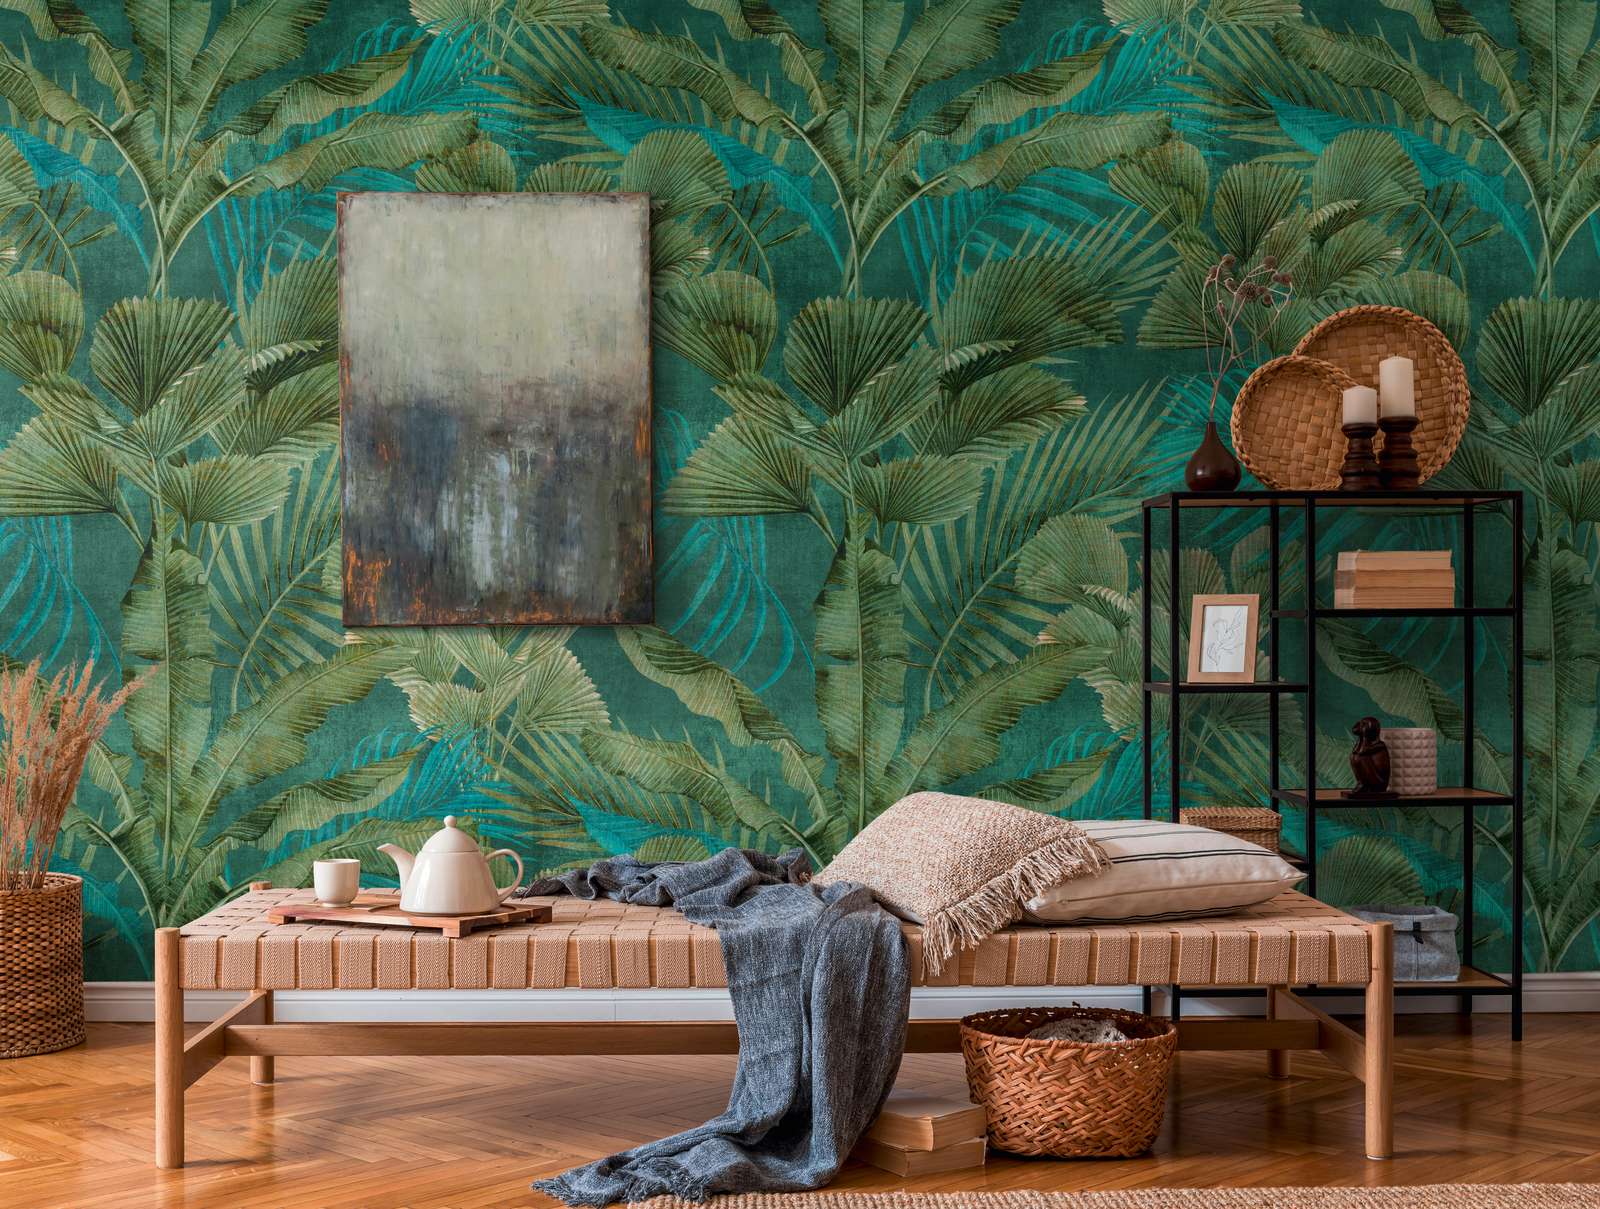             Papel pintado no tejido con varias hojas de selva - verde, azul
        